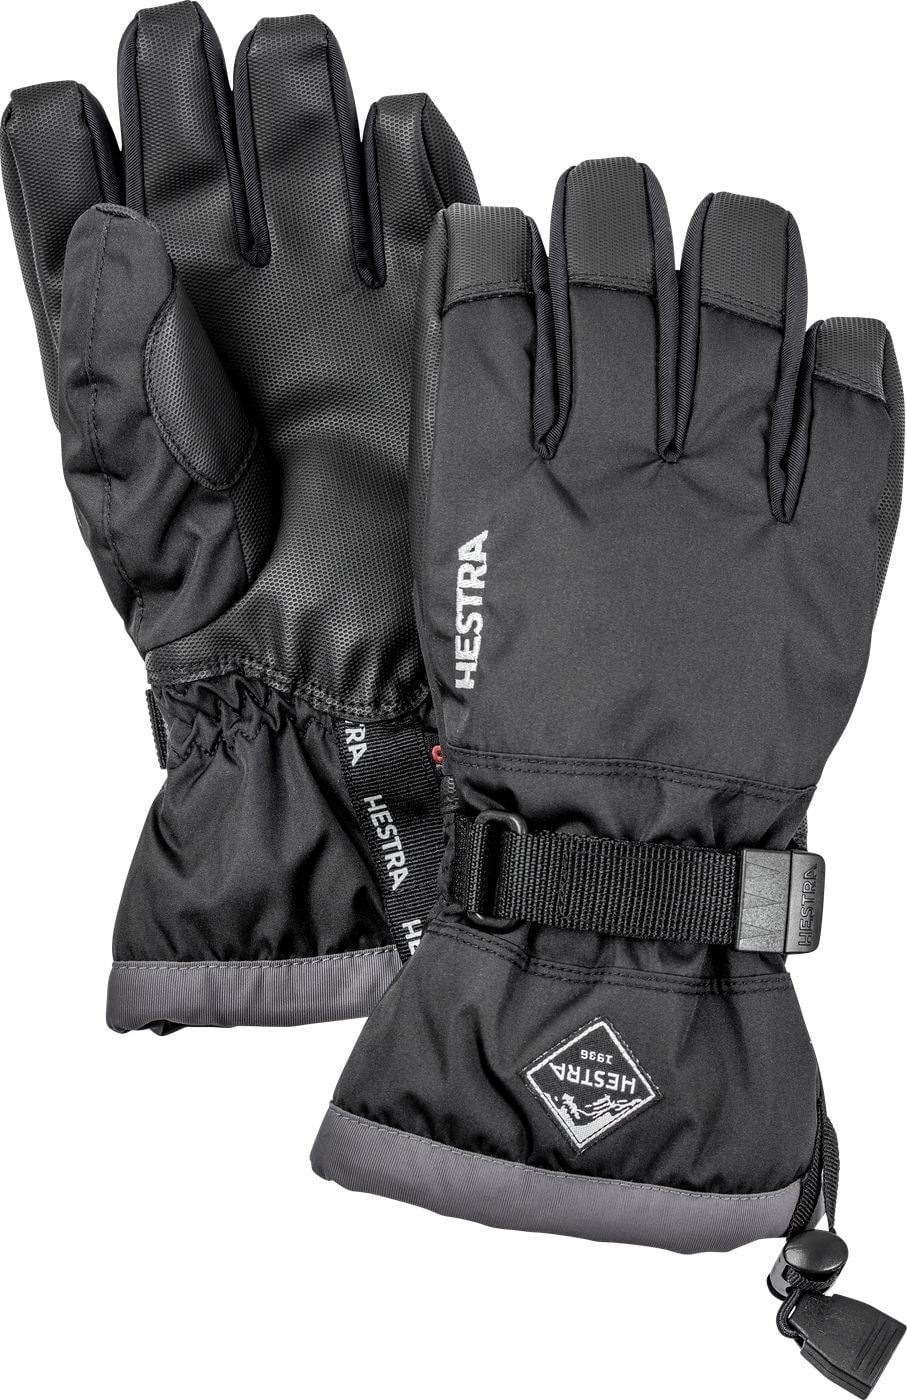 高評価の贈り物 Glove Junior CZone Gauntlet Hestra - Ski and Snow for Glove Kids  Waterproof その他テント